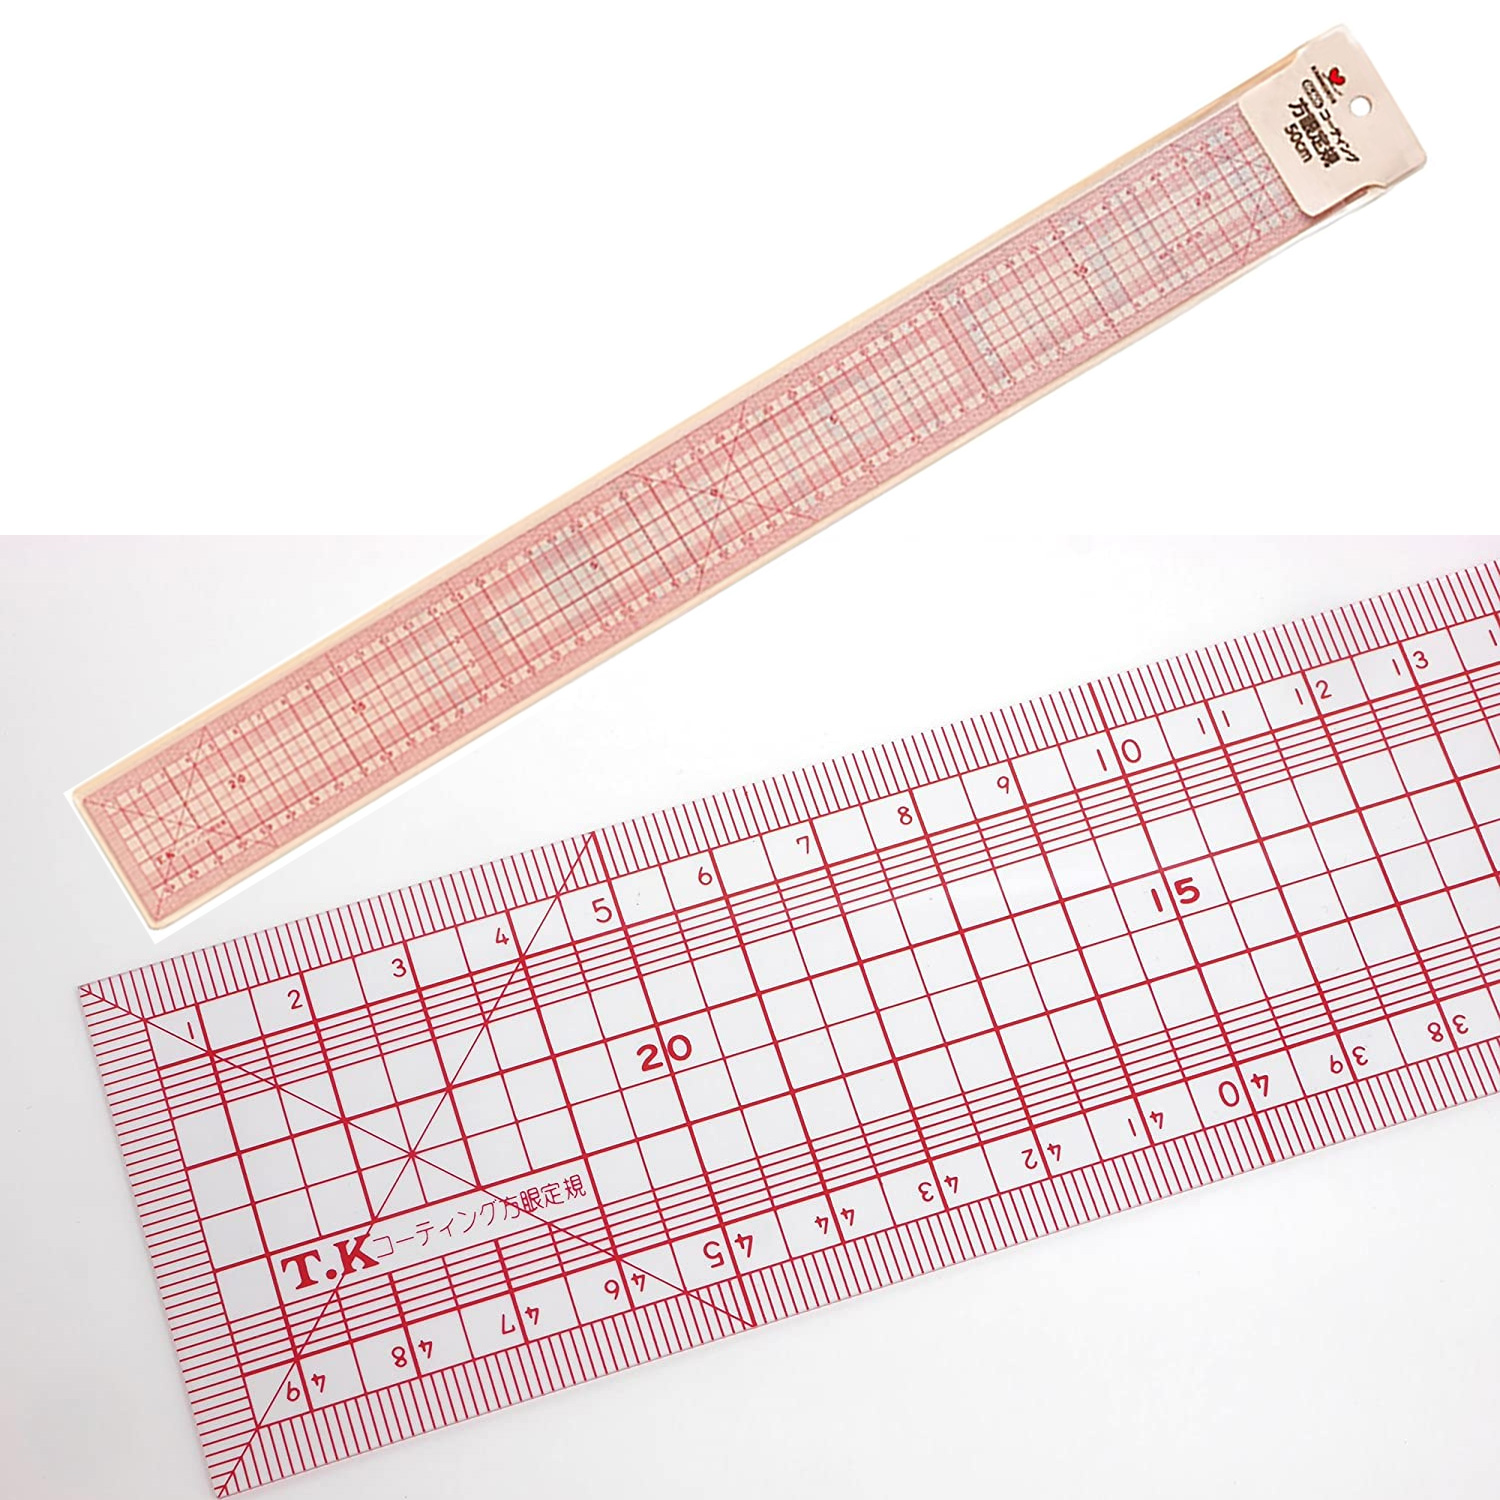 TK05505 KAWAGUCHI Coated Grid Ruler 50cm (pcs)